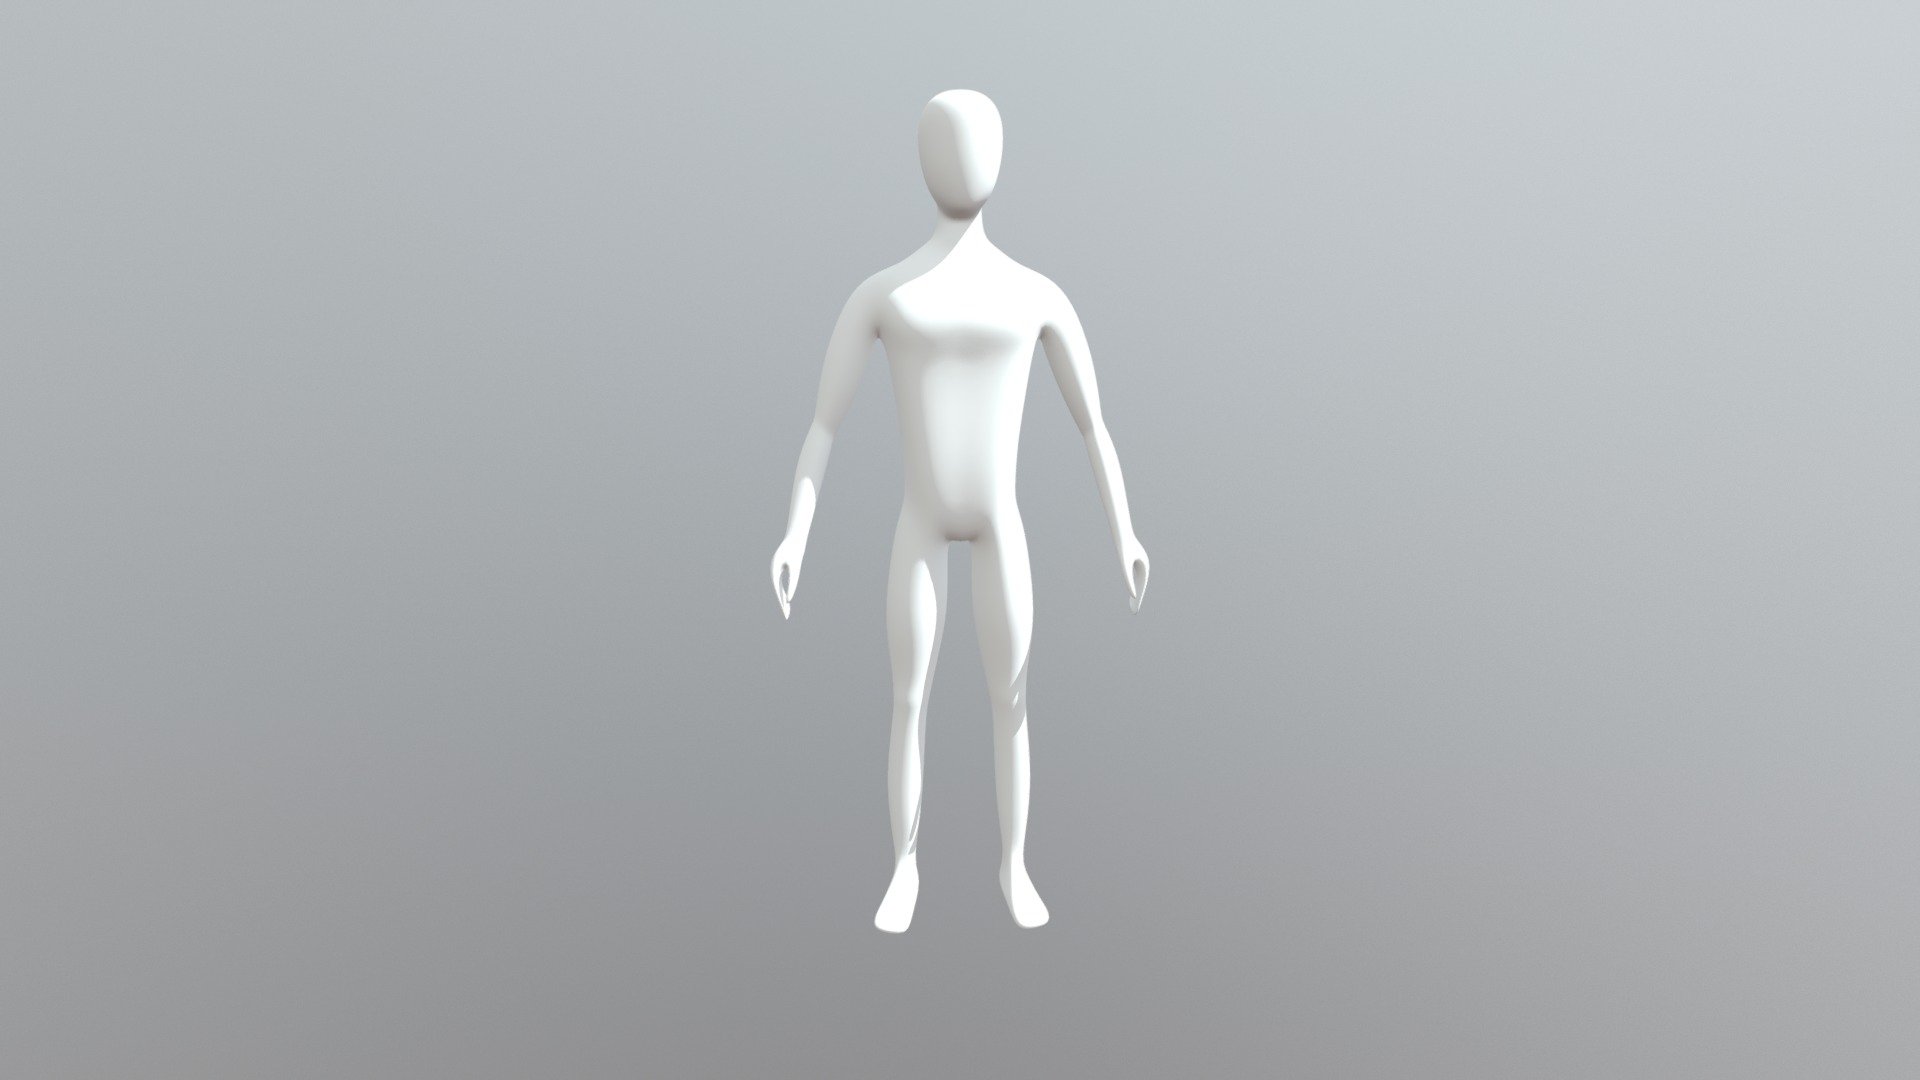 blender download simple human model